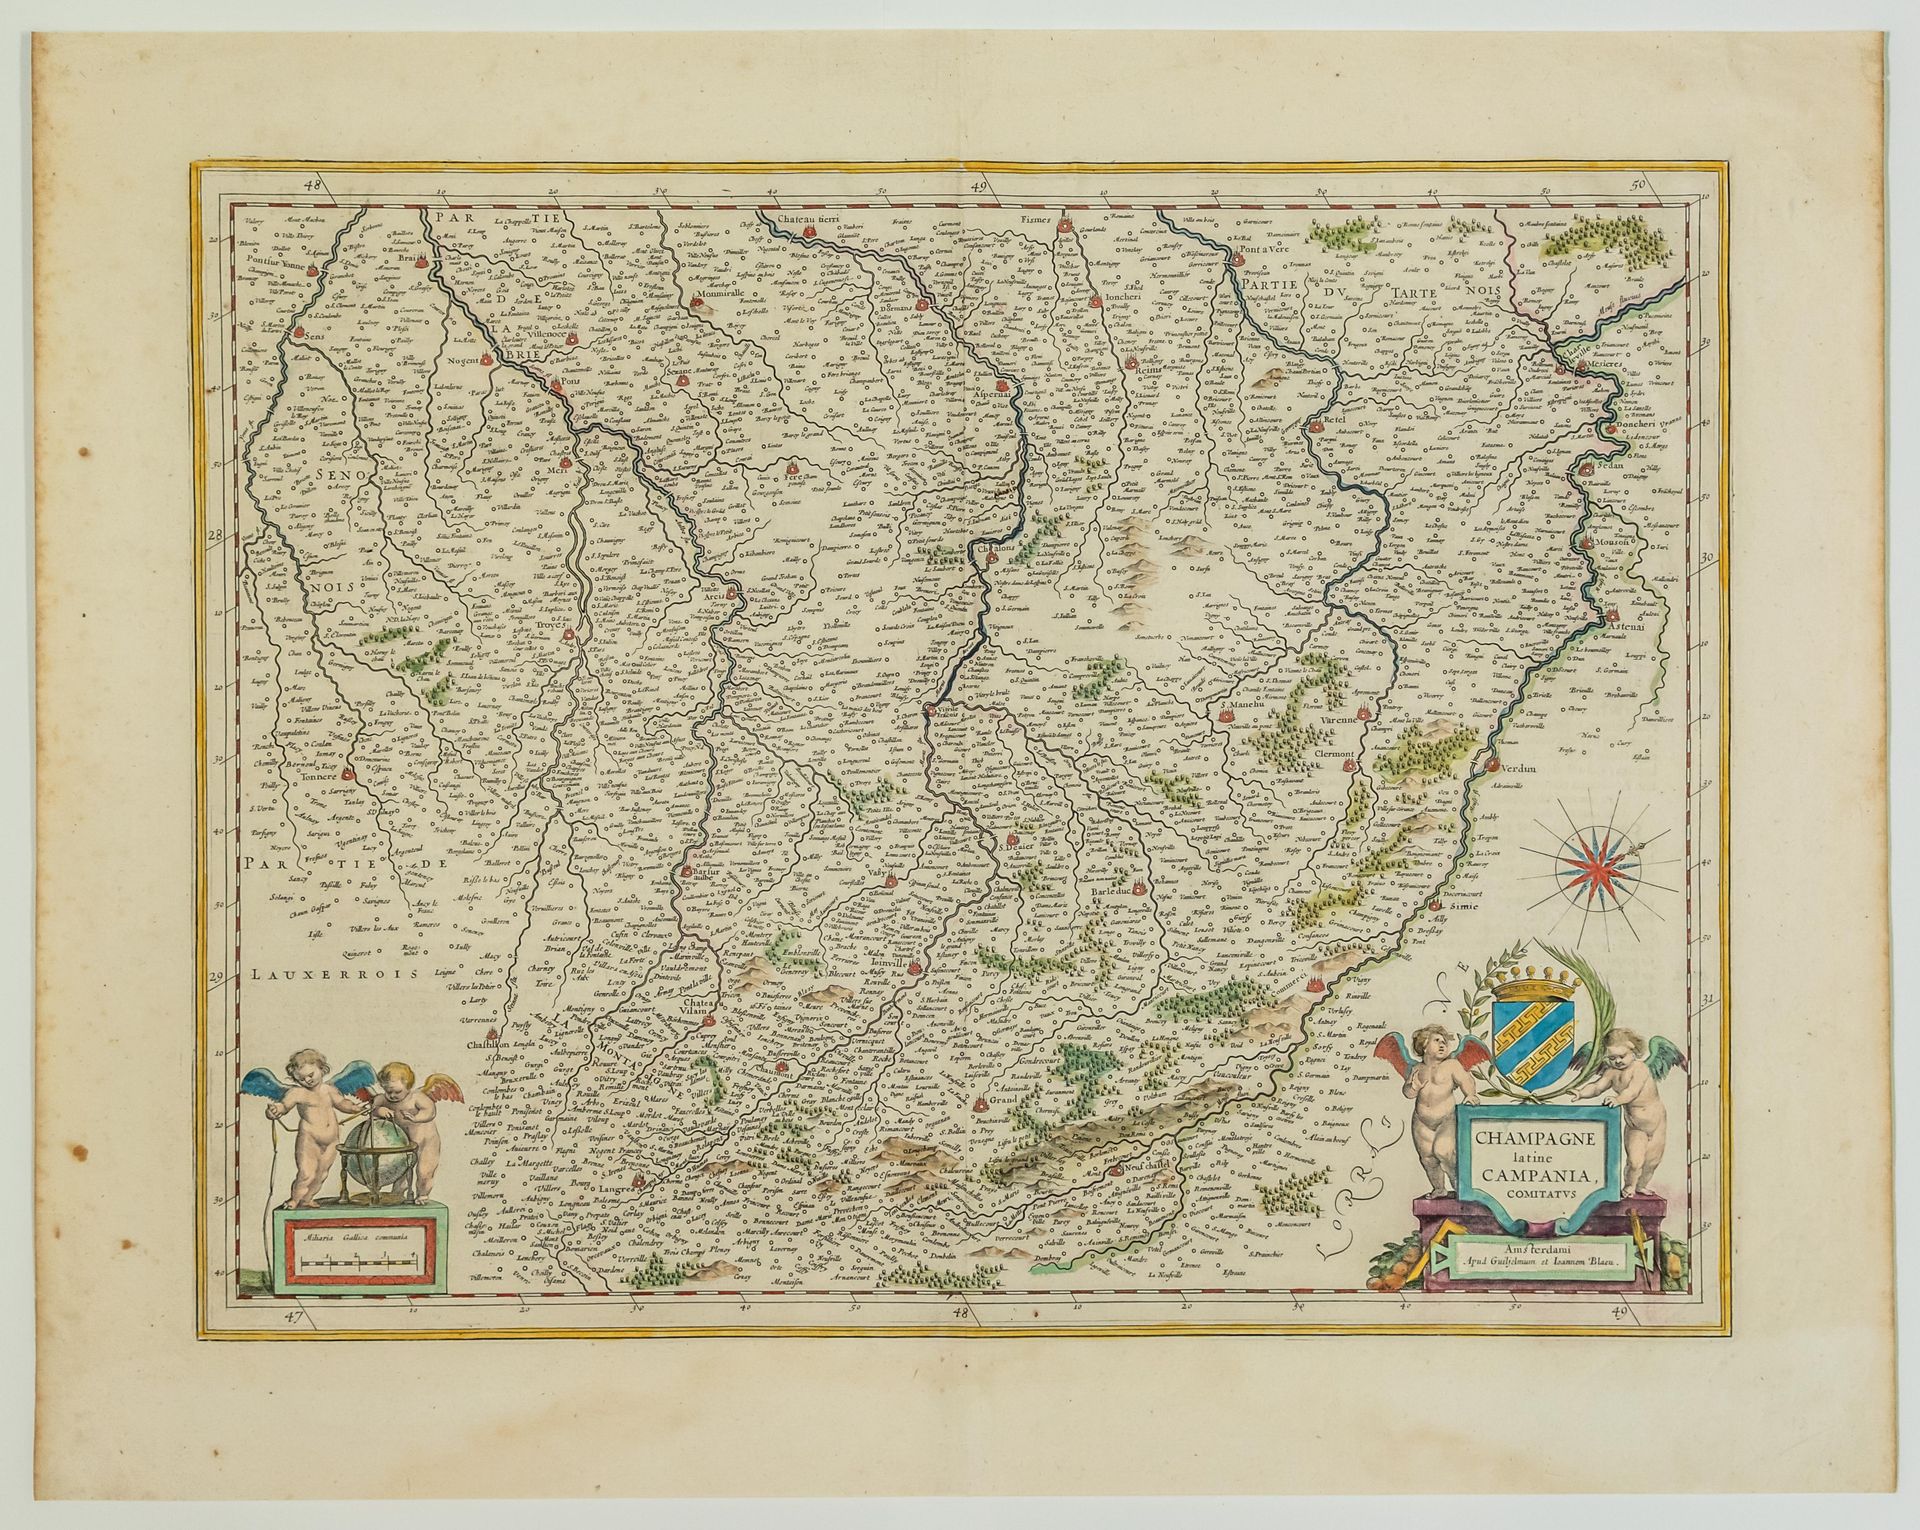 Null Mapa del siglo XVII: "CHAMPAGNE latine, Campania, comitatus". De Guillaume &hellip;